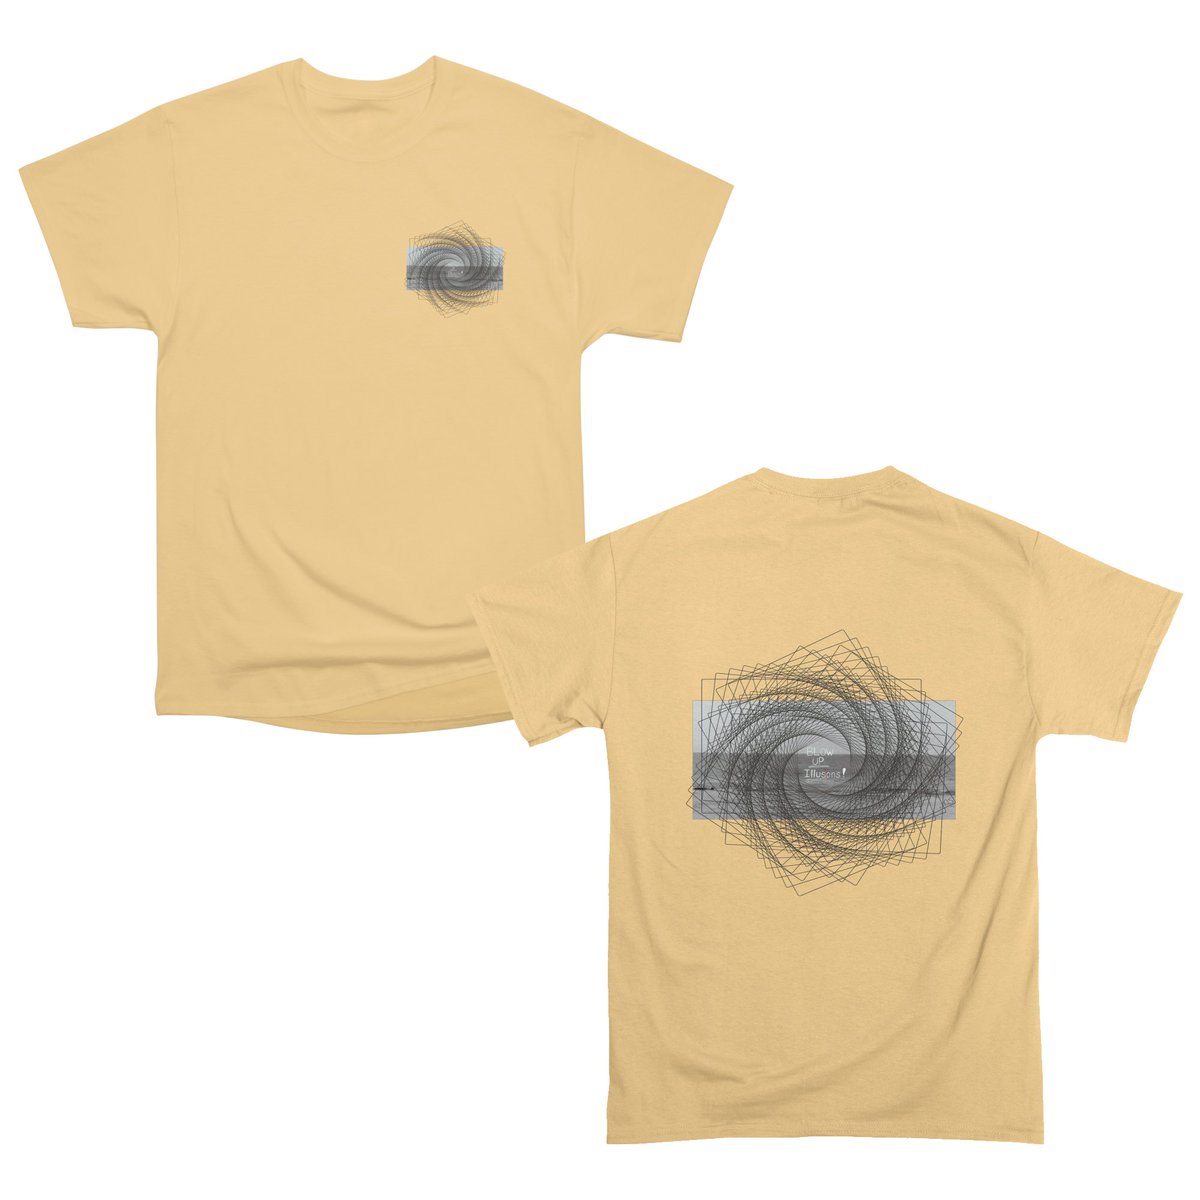 #tshirtstore #tshirtprinting #tshirt #threadless
@threadless annasavart.threadless.com/designs/blow-u…